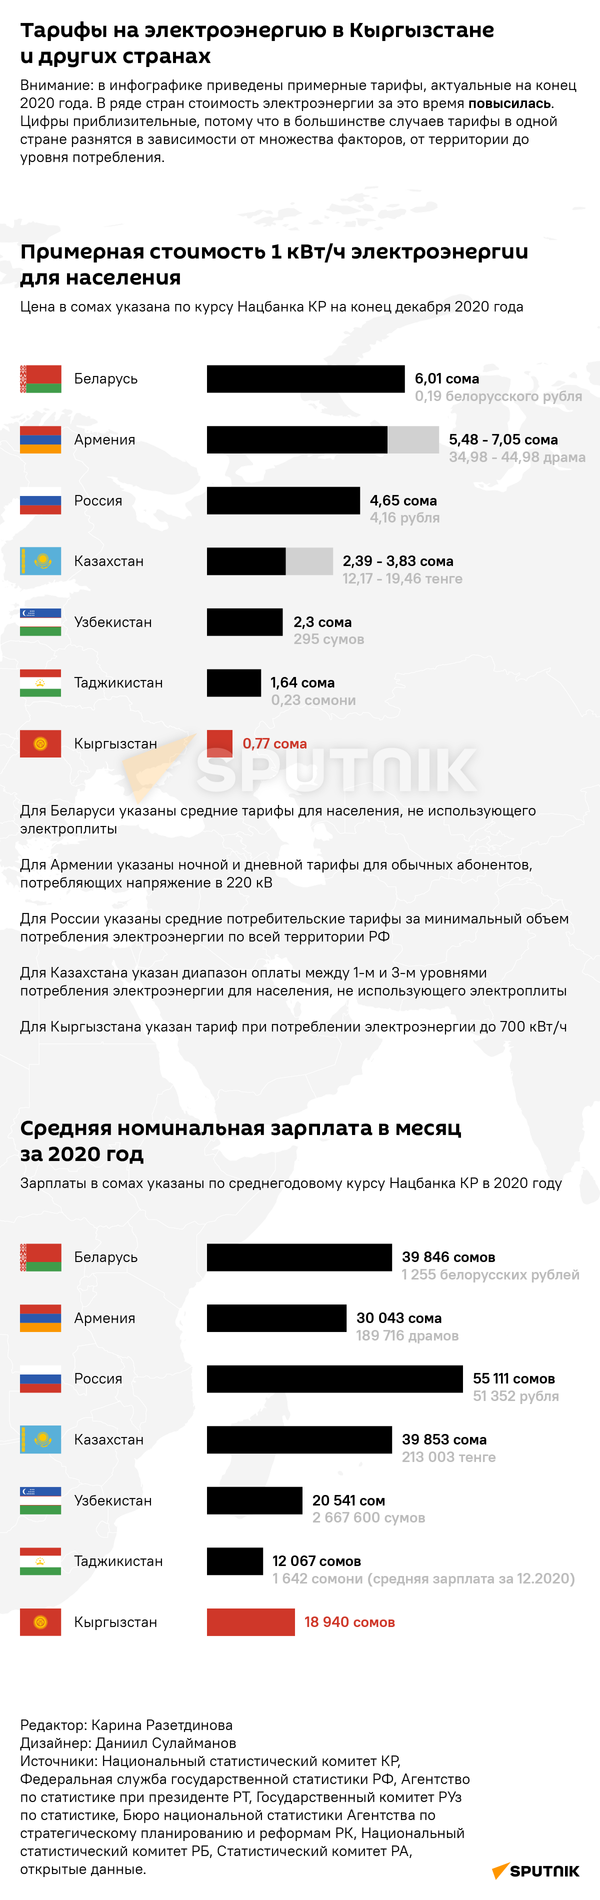 Тарифы на электроэнергию в Кыргызстане и других странах - Sputnik Таджикистан